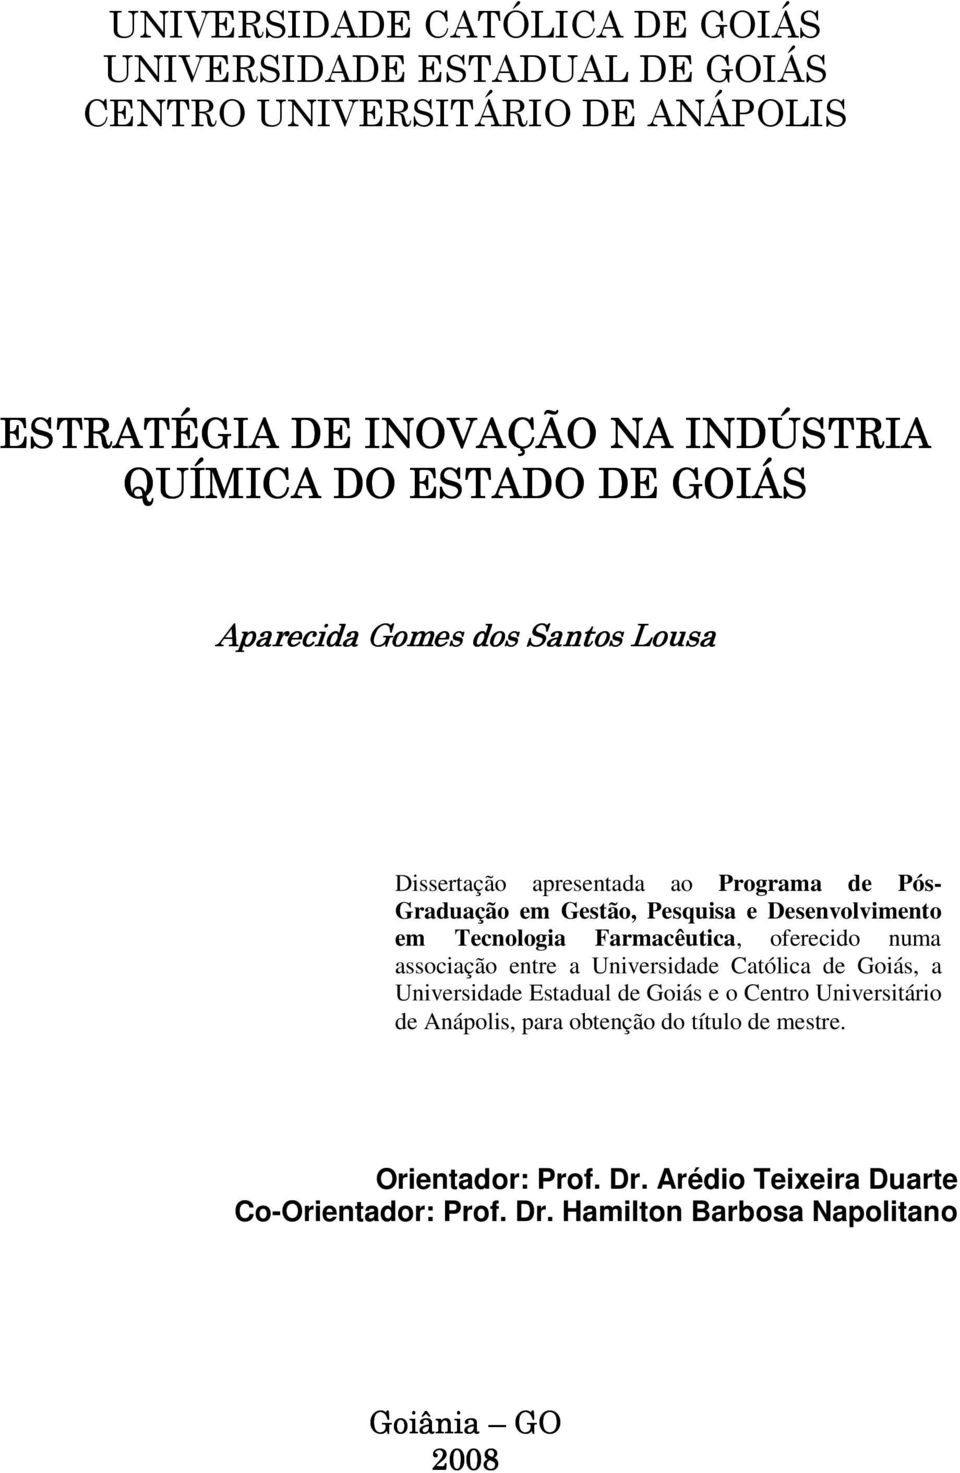 Farmacêutica, oferecido numa associação entre a Universidade Católica de Goiás, a Universidade Estadual de Goiás e o Centro Universitário de